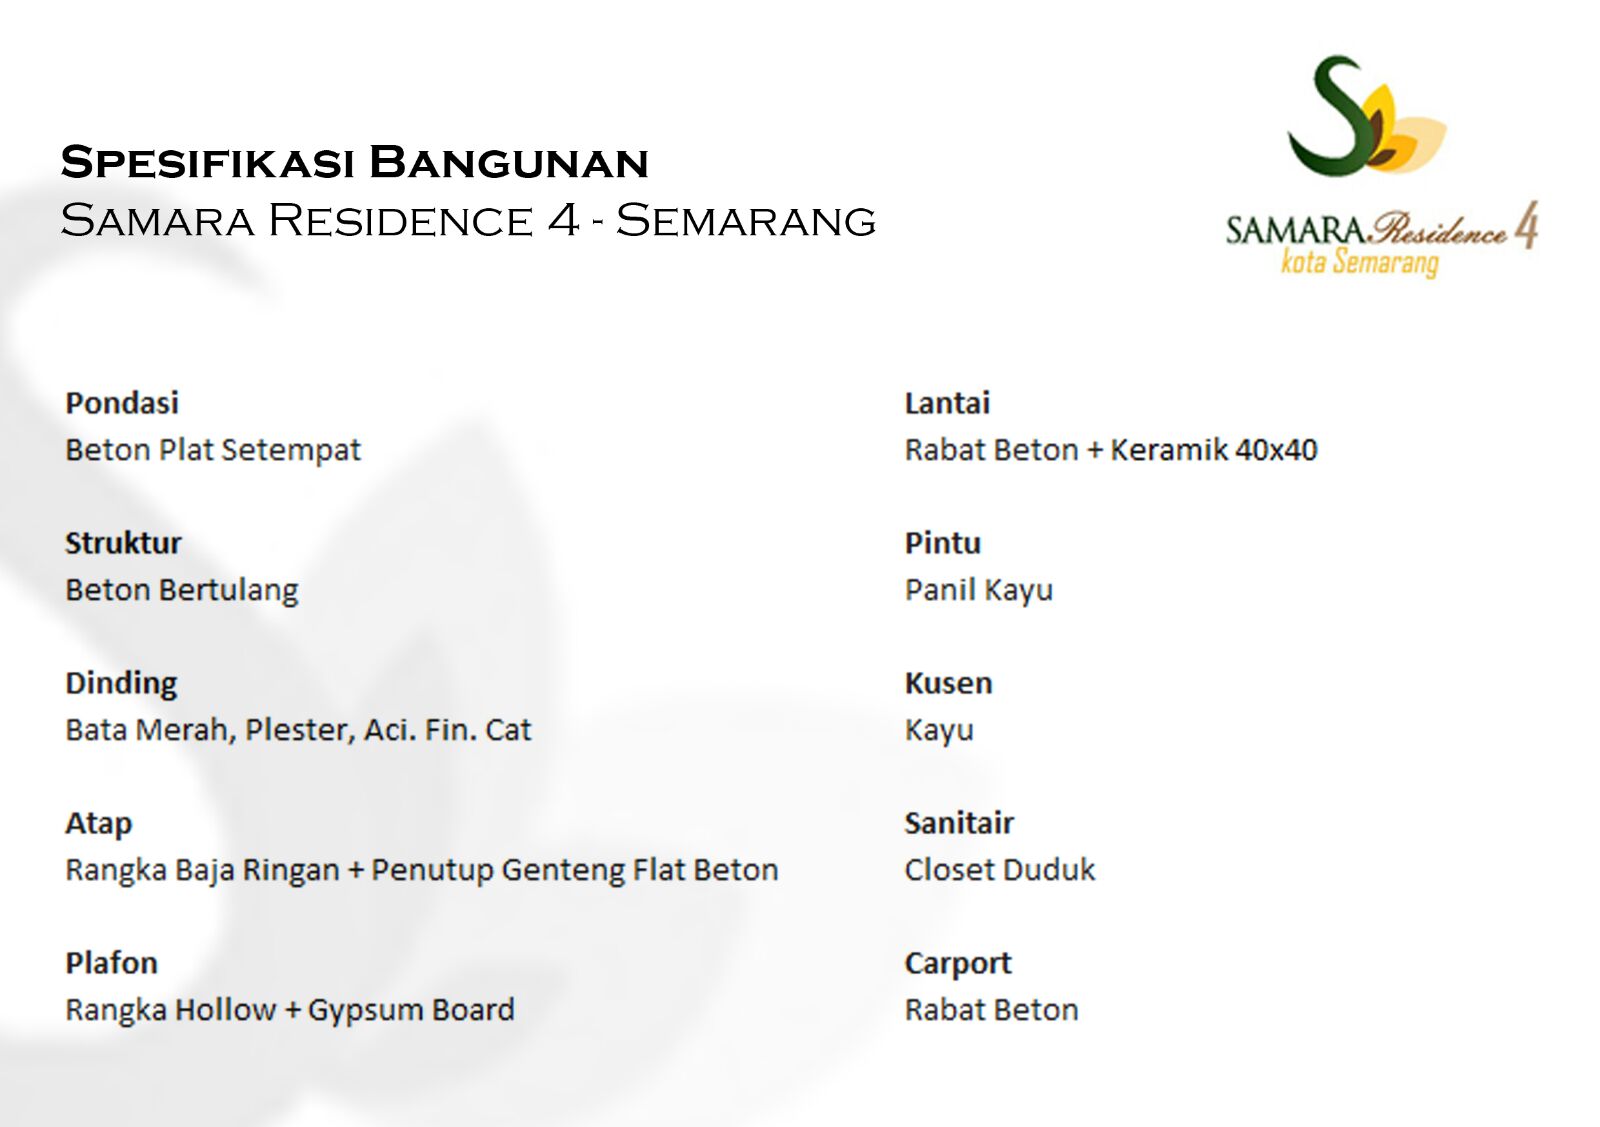 Rumah KPR Syariah Semarang Samara Residence 4